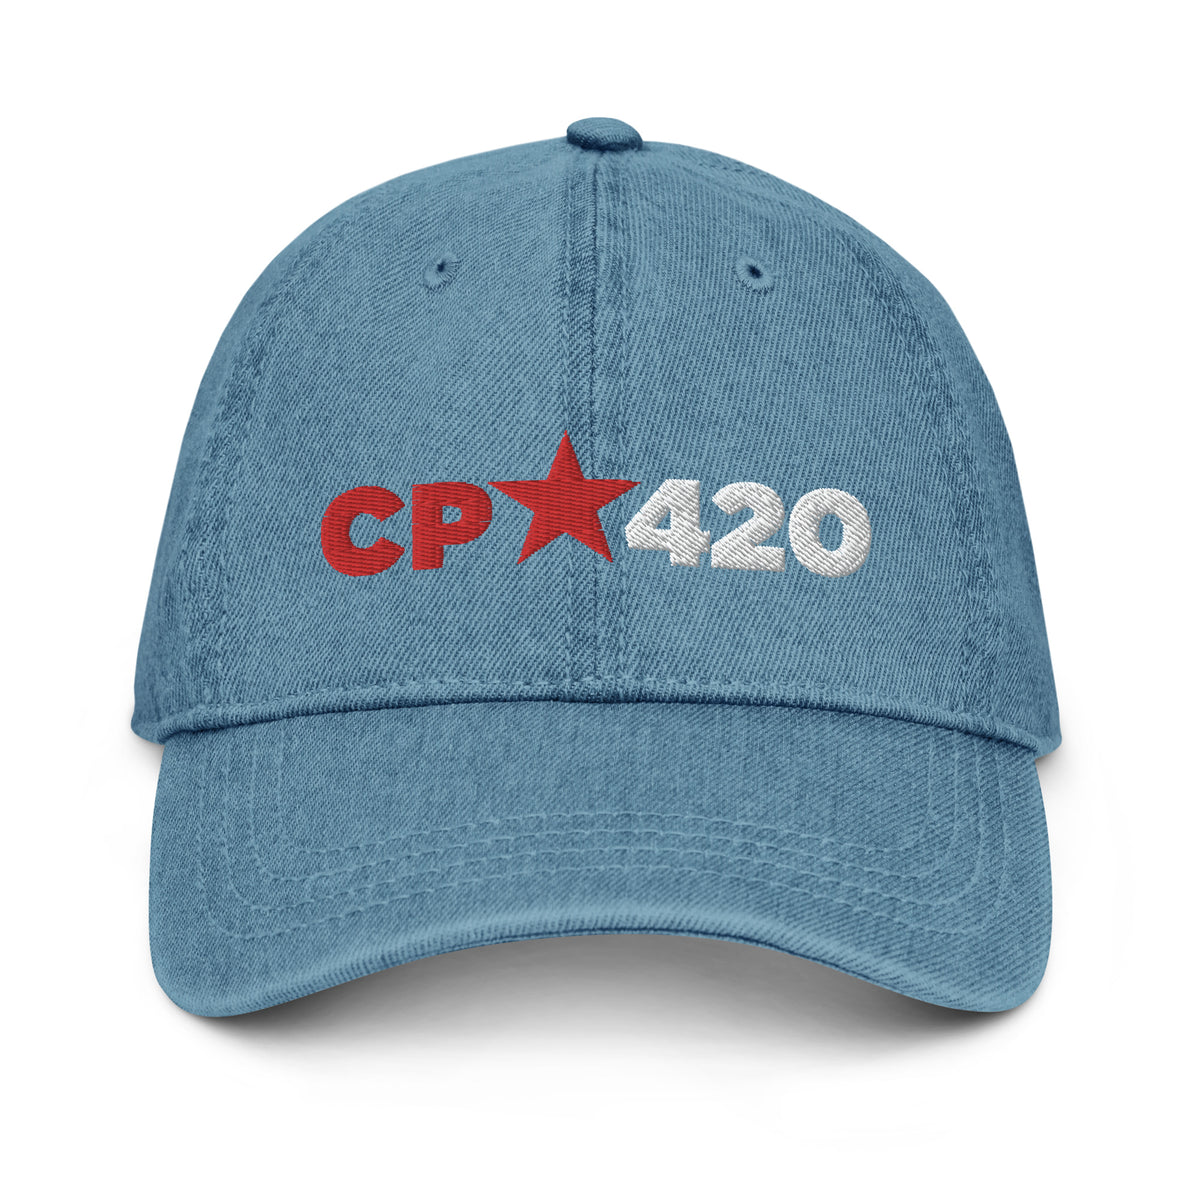 CP 420 Denim Hat